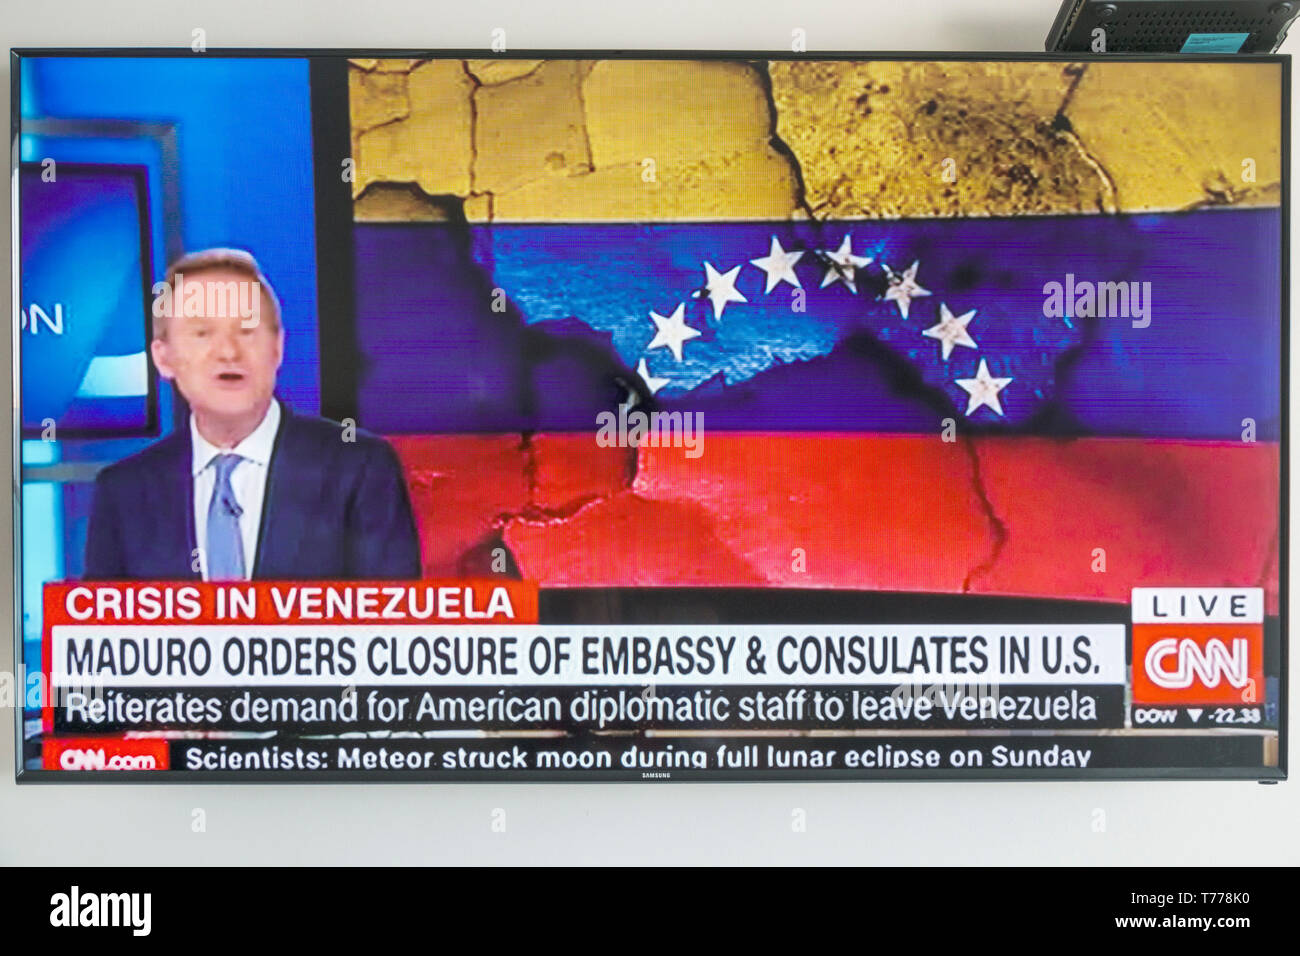 Cartagena Kolumbien, Fernsehbildschirm Flachbildschirm, CNN, Nachrichten, venezolanische Krise, Maduro ordnet Botschaftsschließungen an, Besucher reisen Reise Tour t Stockfoto